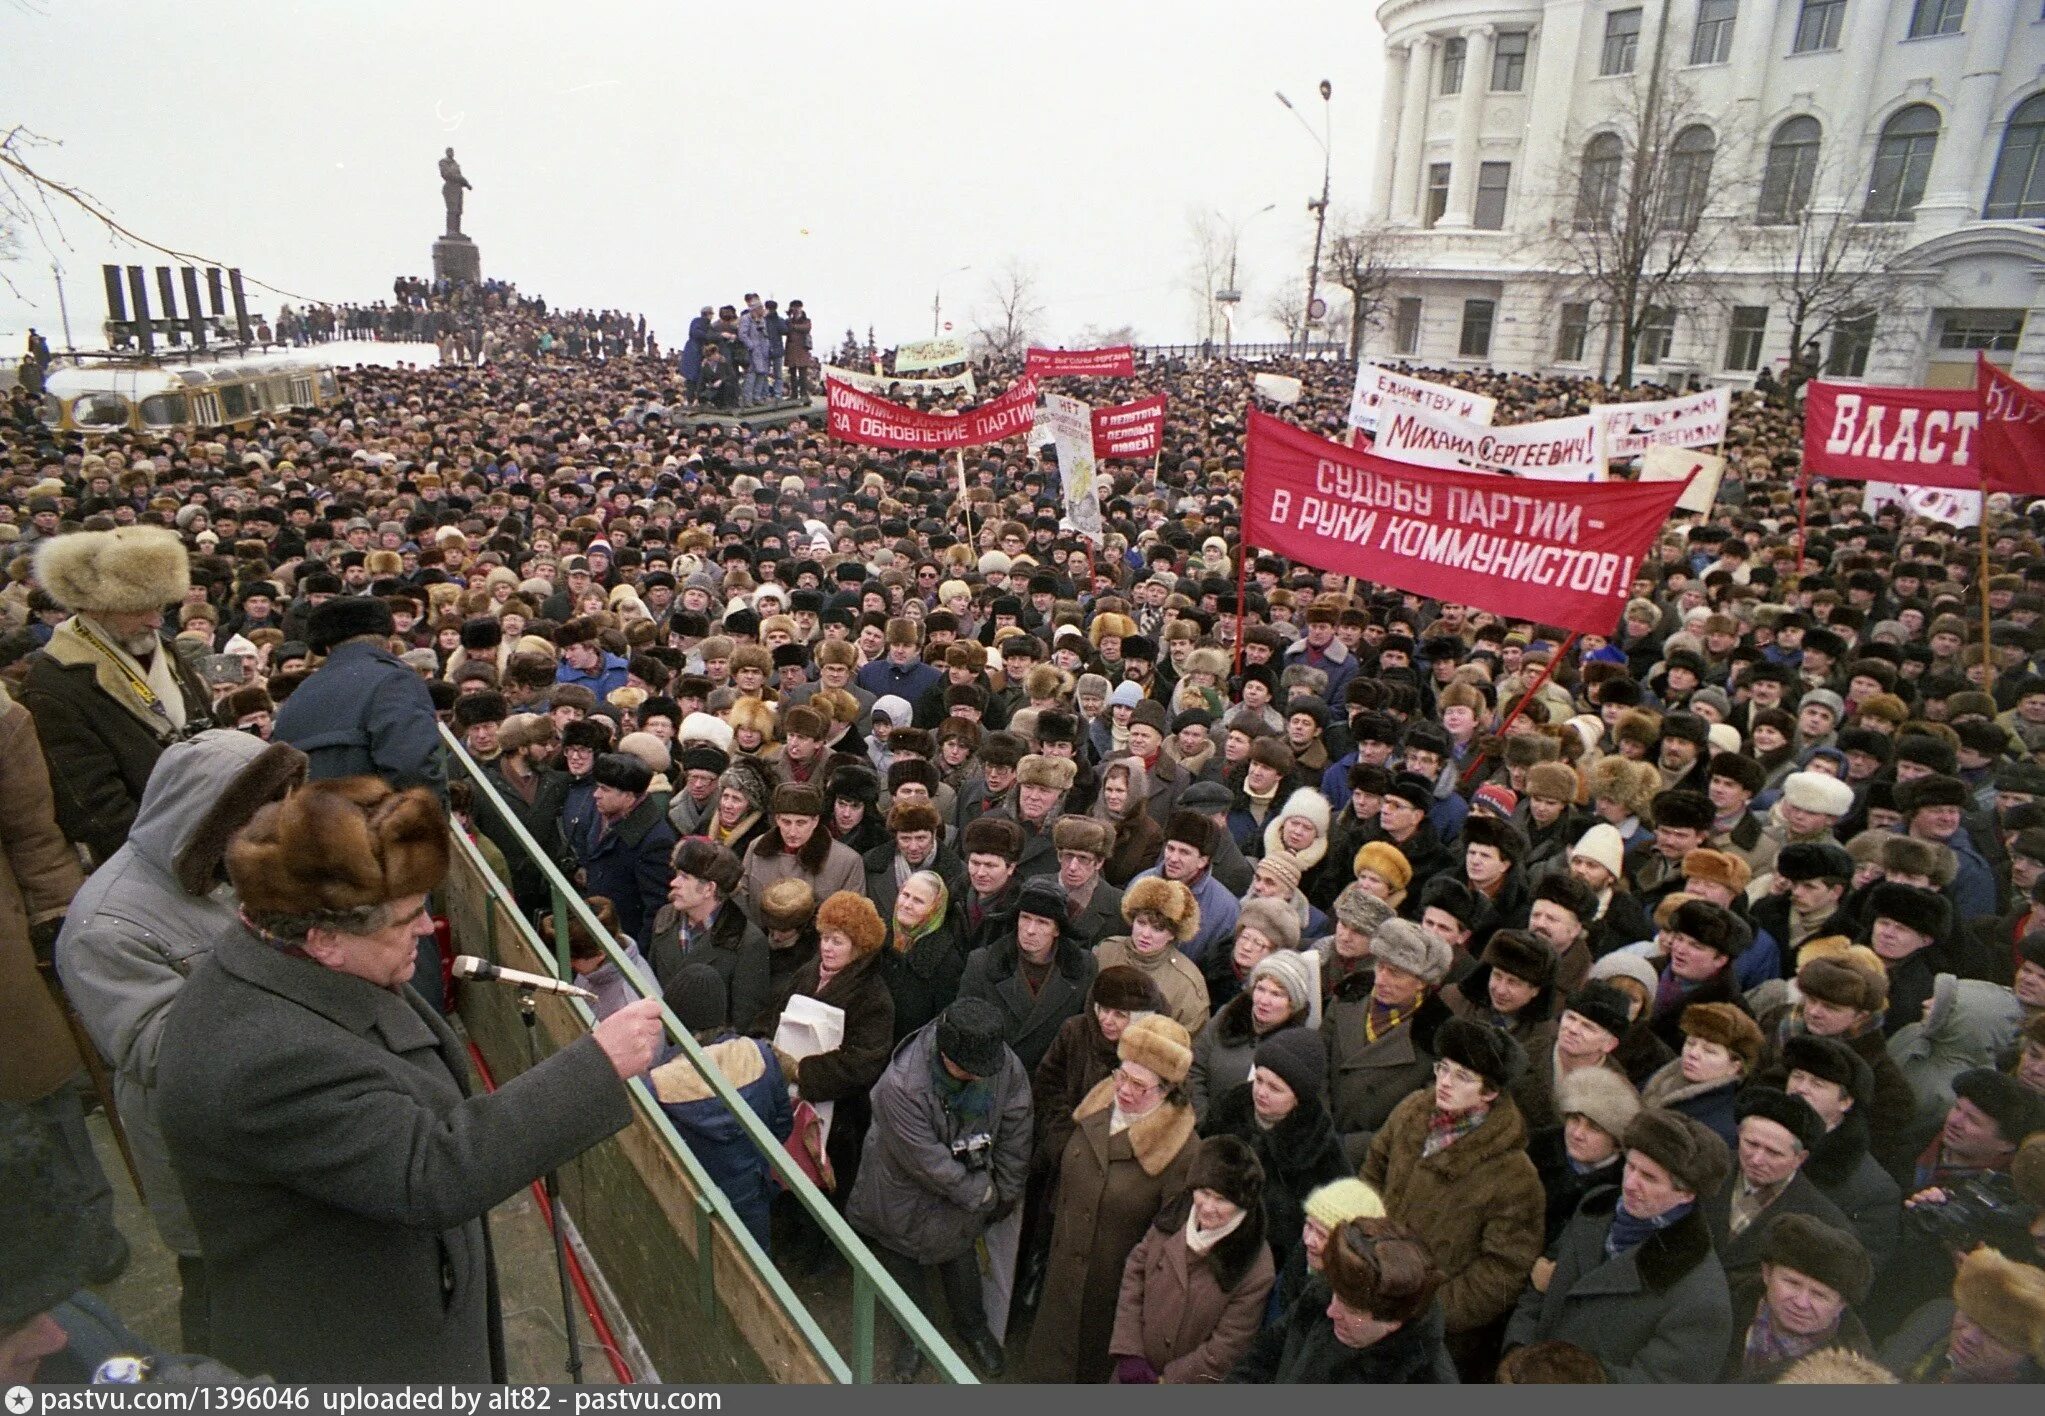 Ельцин митинг 1991. Москва 1991 митинг за Ельцина. Митинг на Манежной 1991. Митинг за Ельцина 1993.